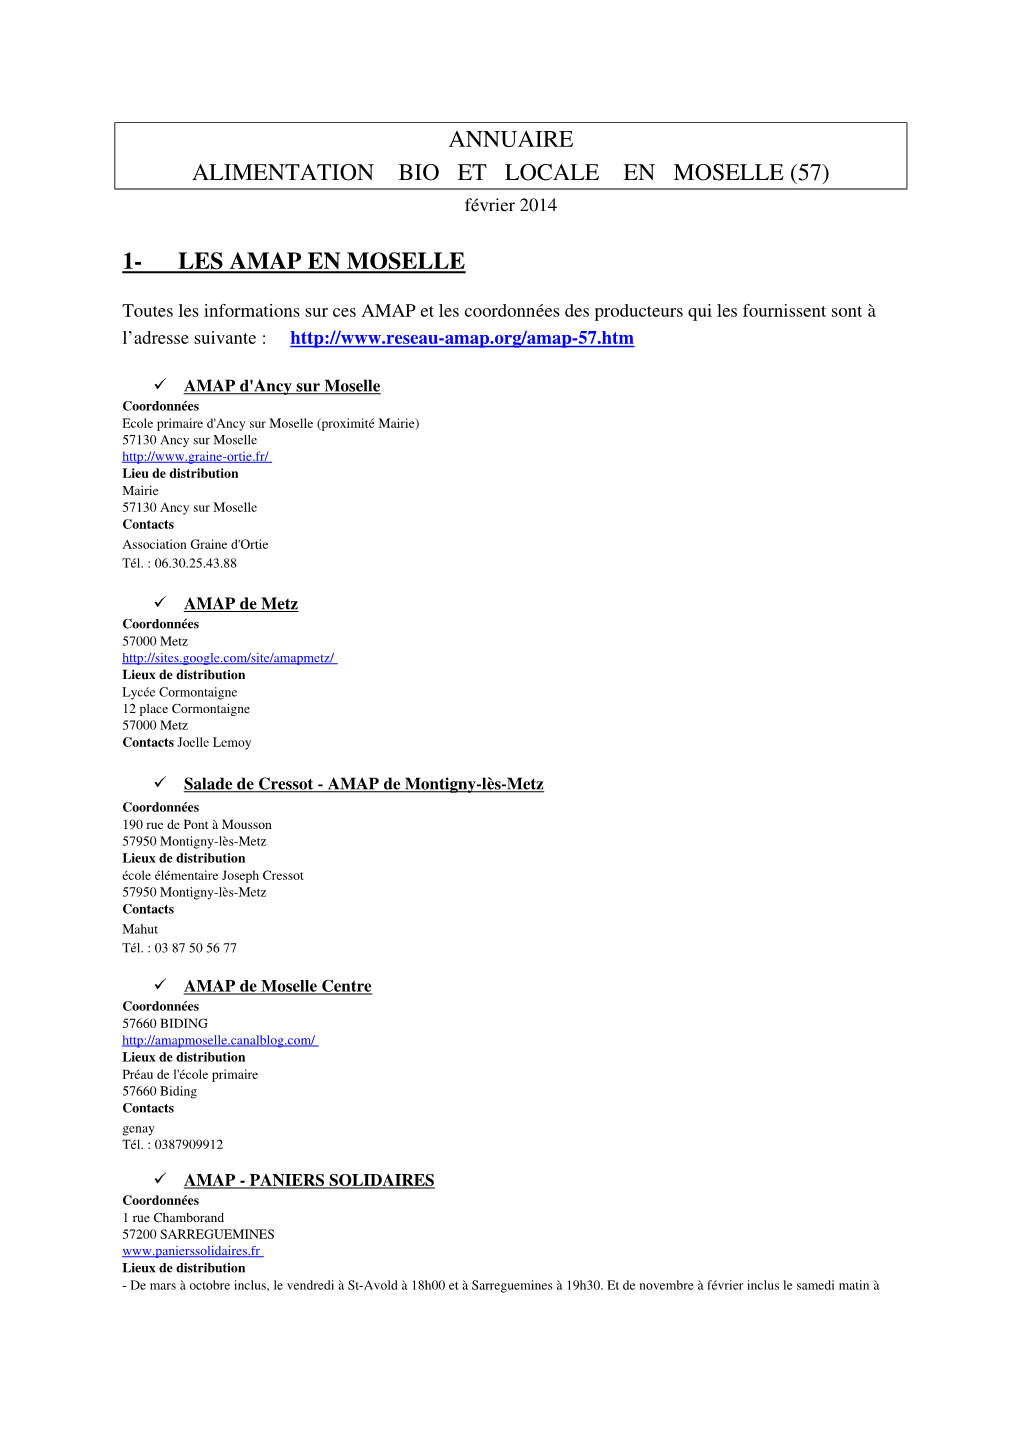 ANNUAIRE ALIMENTATION BIO ET LOCALE EN MOSELLE (57) Février 2014